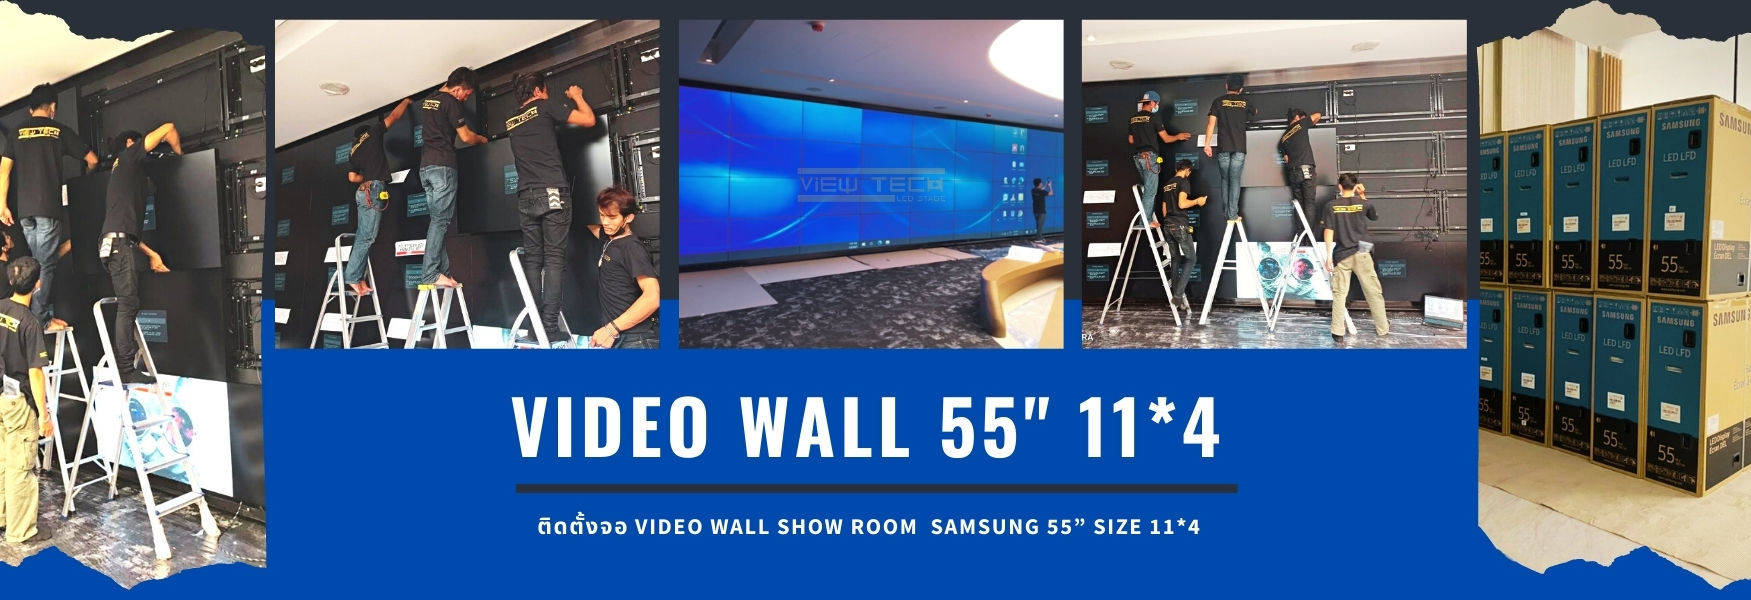 ติดตั้งจอ Video Wall SHOW ROOM  SAMSUNG 55” SIZE 11*4